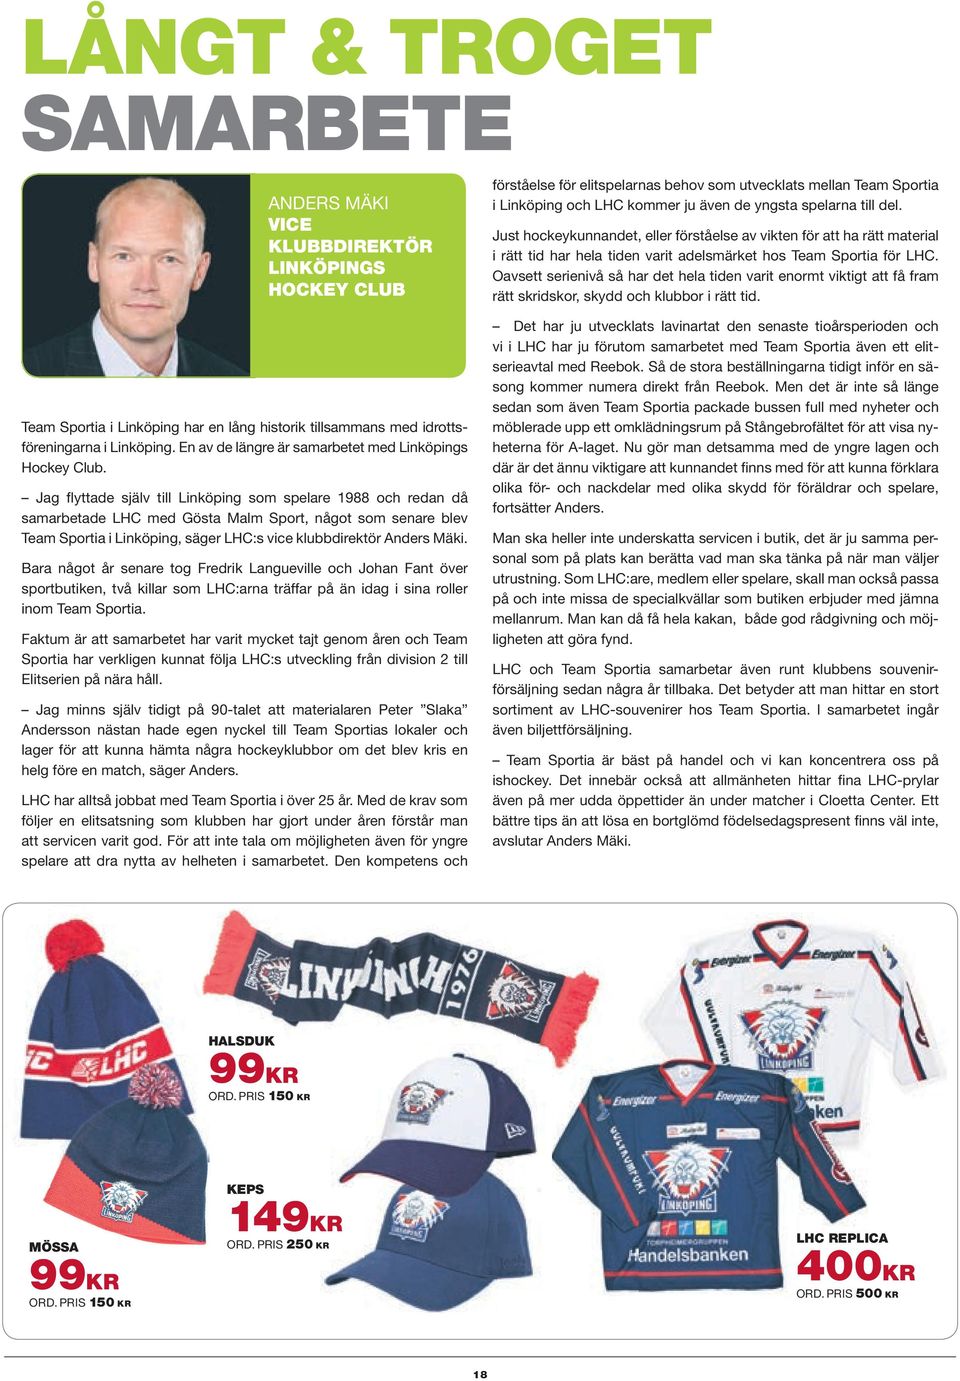 Jag flyttade själv till Linköping som spelare 1988 och redan då samarbetade LHC med Gösta Malm Sport, något som senare blev Team Sportia i Linköping, säger LHC:s vice klubbdirektör Anders Mäki.